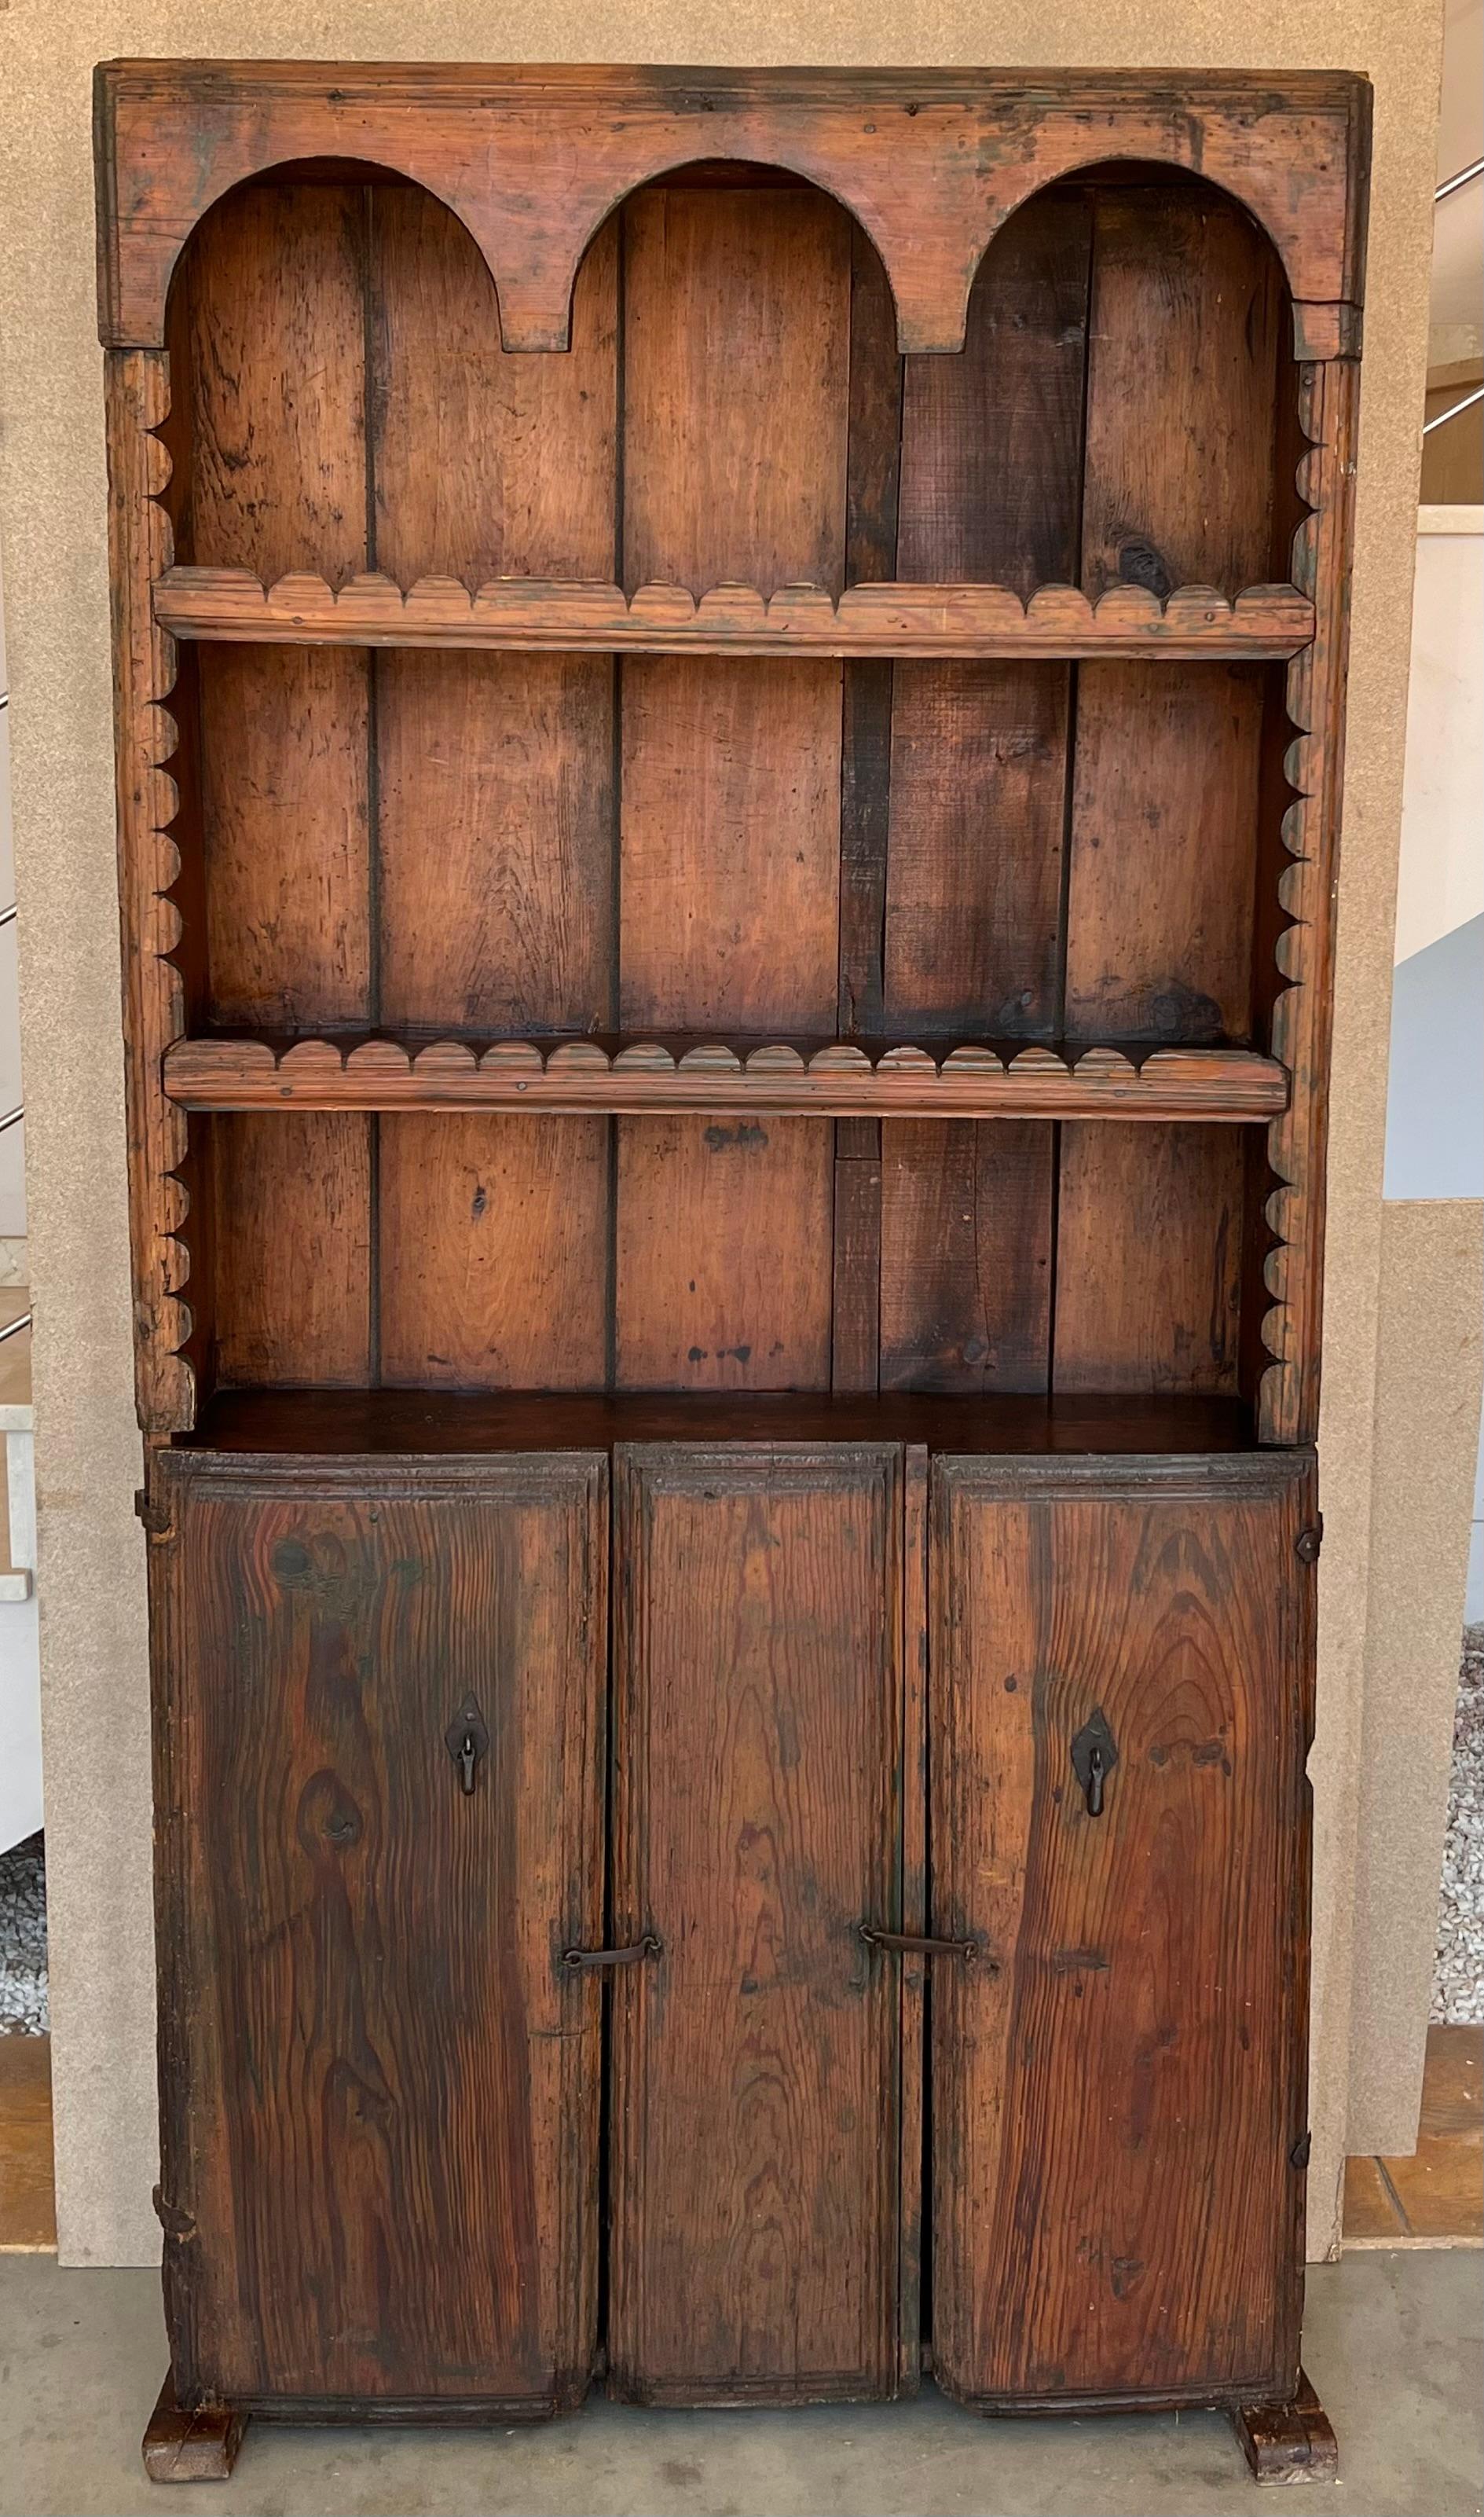 Großer spanischer Schrank oder Buffet des 20. Jahrhunderts aus Nussbaumholz. Mit einem offenen Regal, das im unteren Teil von zwei Türen abgeschlossen wird. Dieser massive Schrank, der in Spanien hergestellt wurde, weist eine wunderschöne